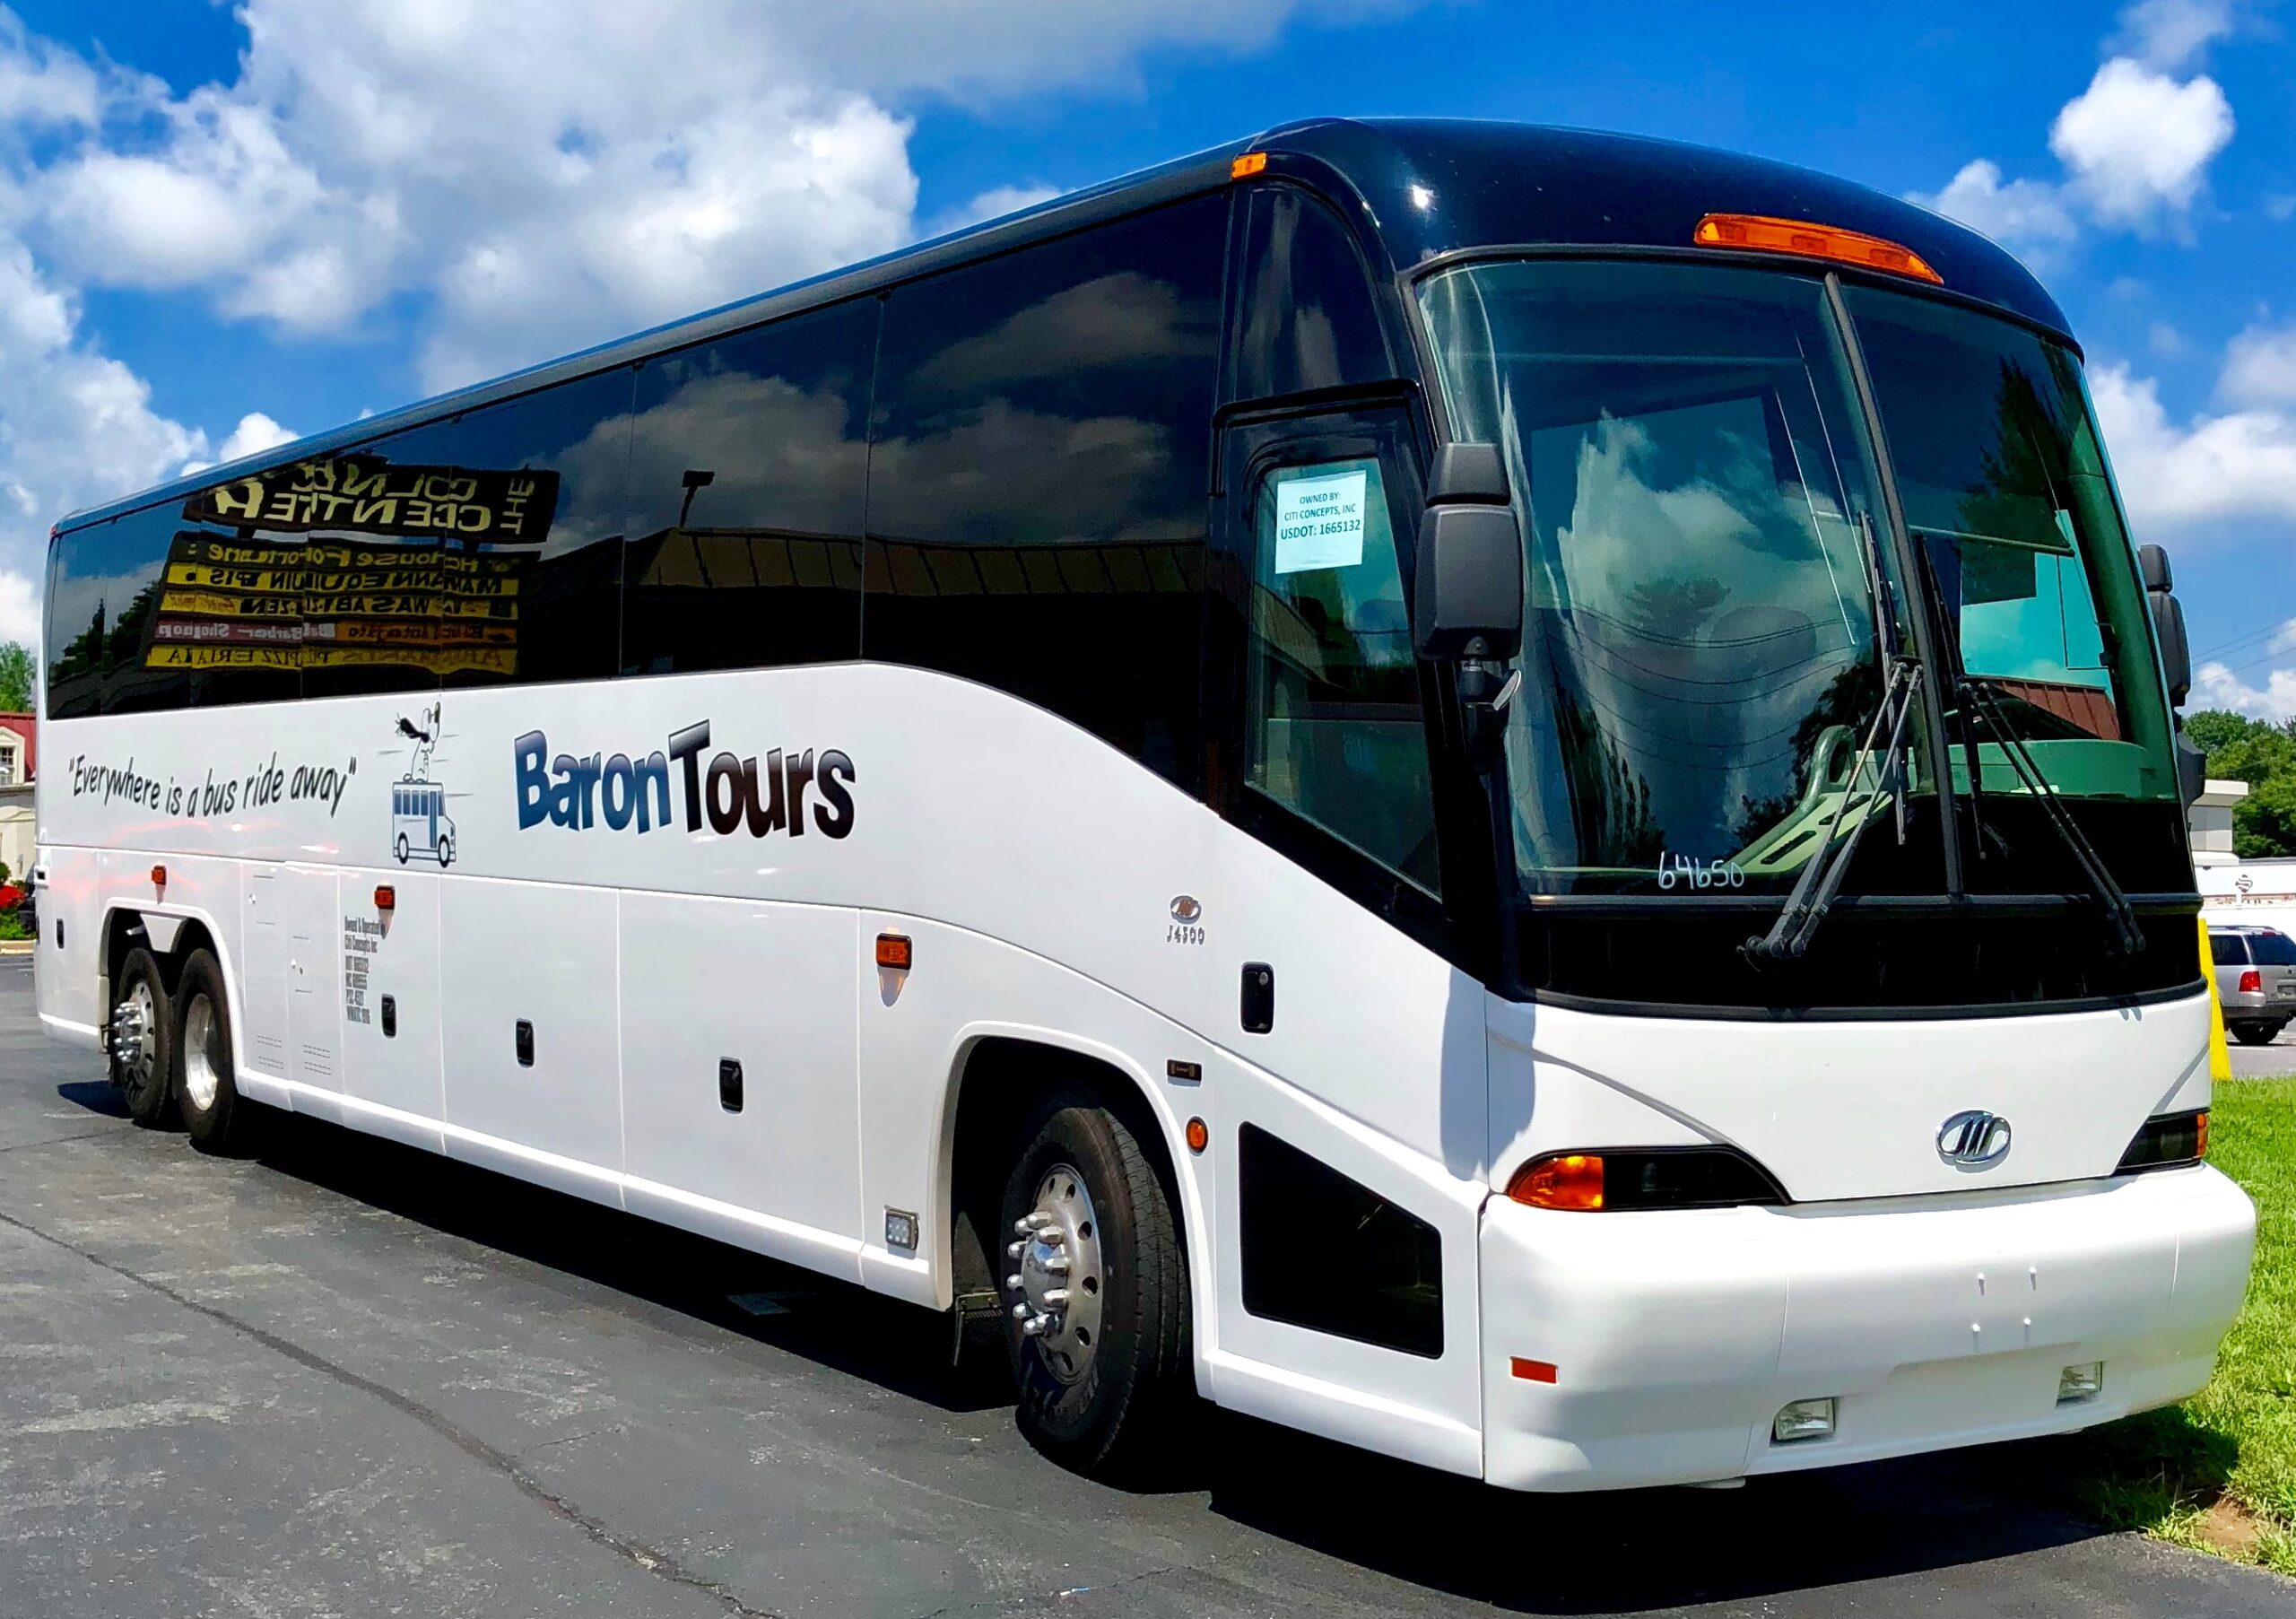 bus tour companies in ri